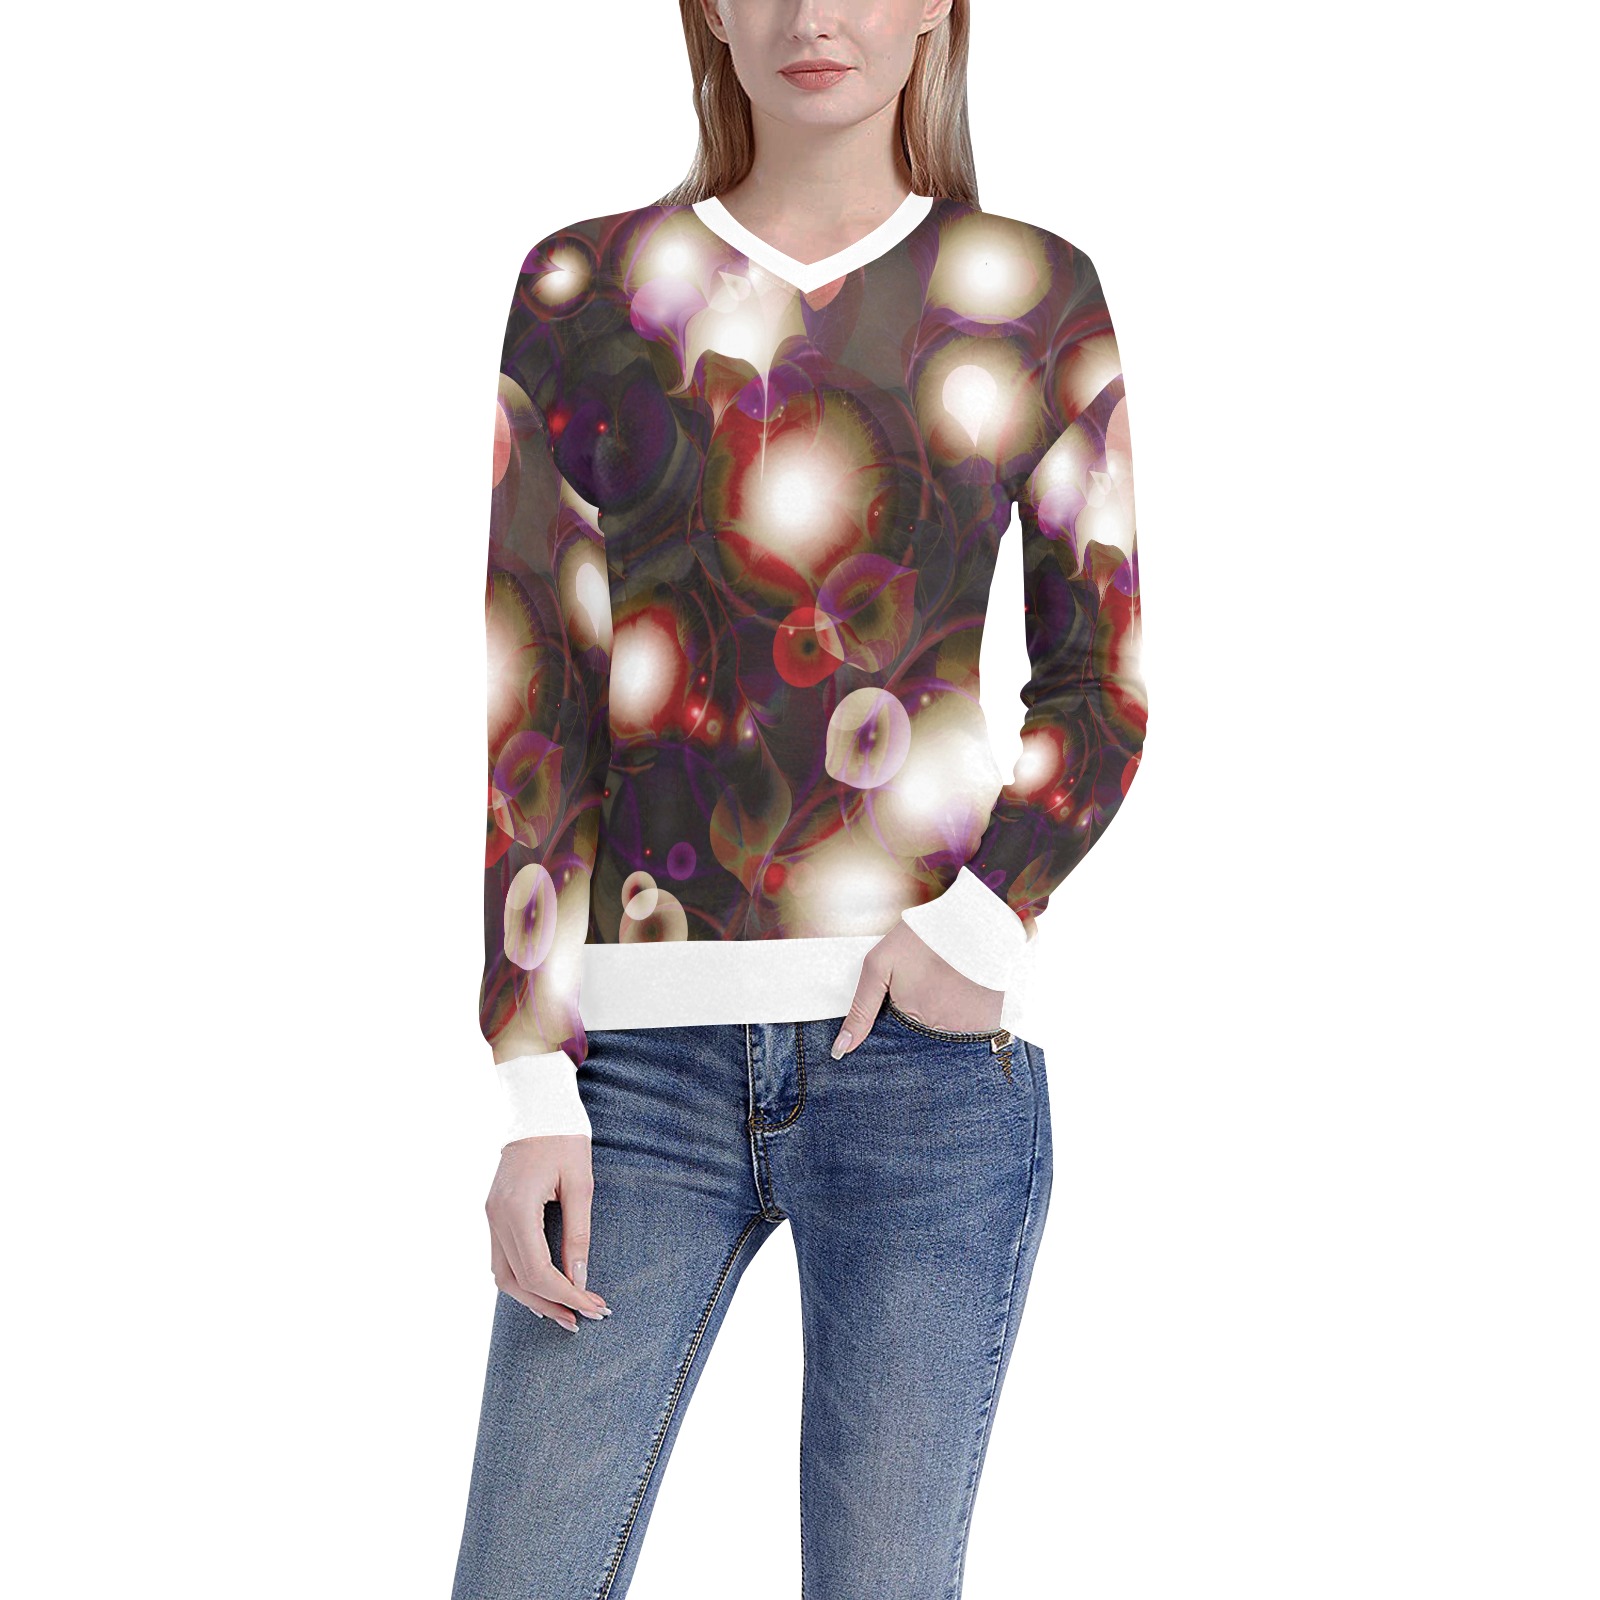 melting bubbles7 Women's All Over Print V-Neck Sweater (Model H48)